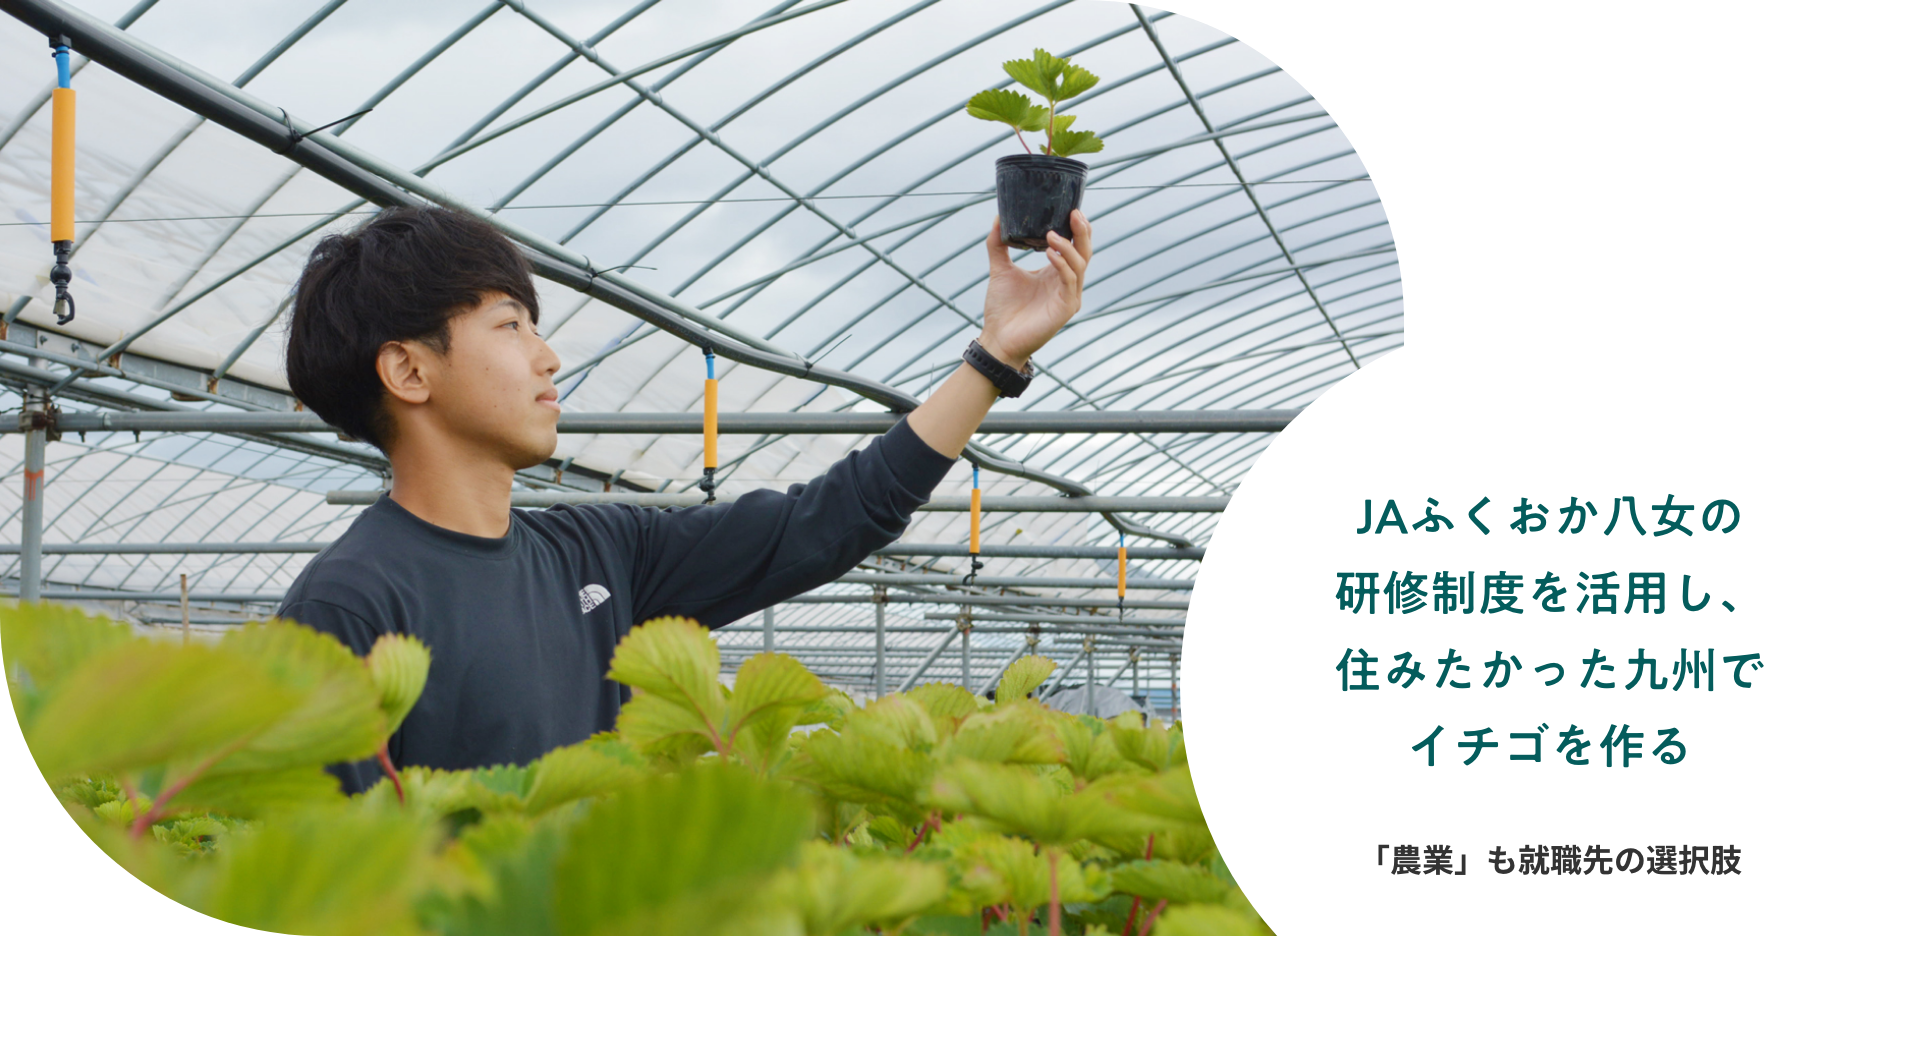 JAふくおか八女の研修制度を活用し、住みたかった九州でイチゴを作る 「農業」も就職先の選択肢